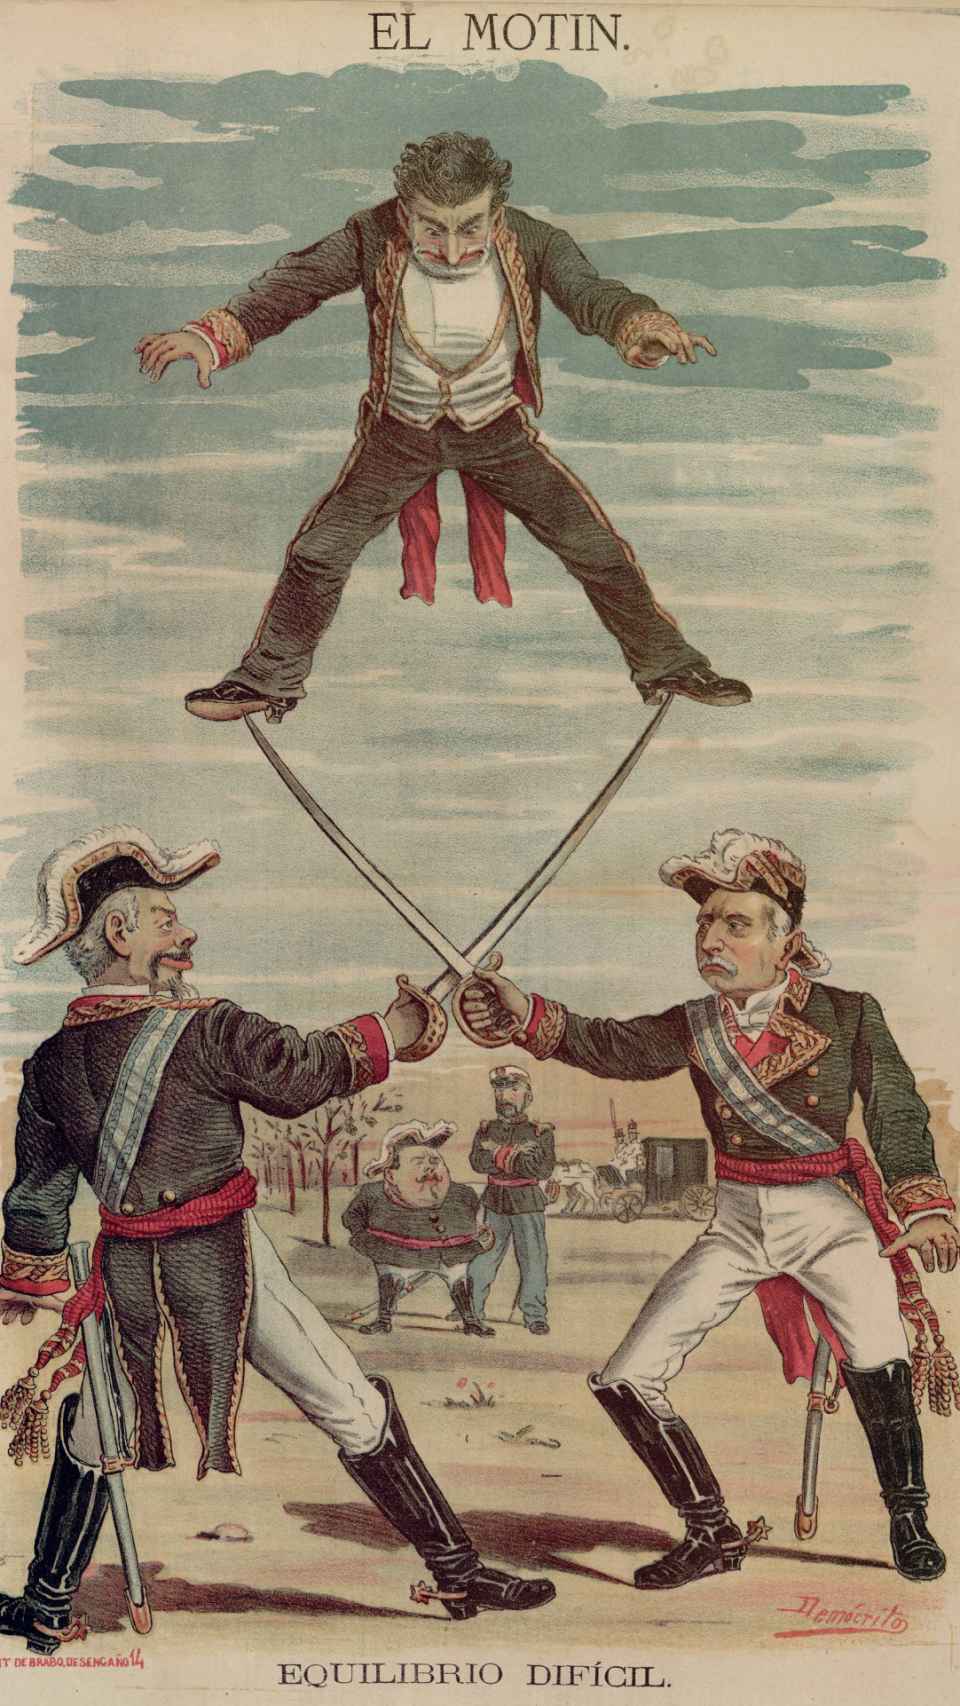 Equilibrio difícil, ilustración de 'Demócrito' para 'El Motín' (1881).